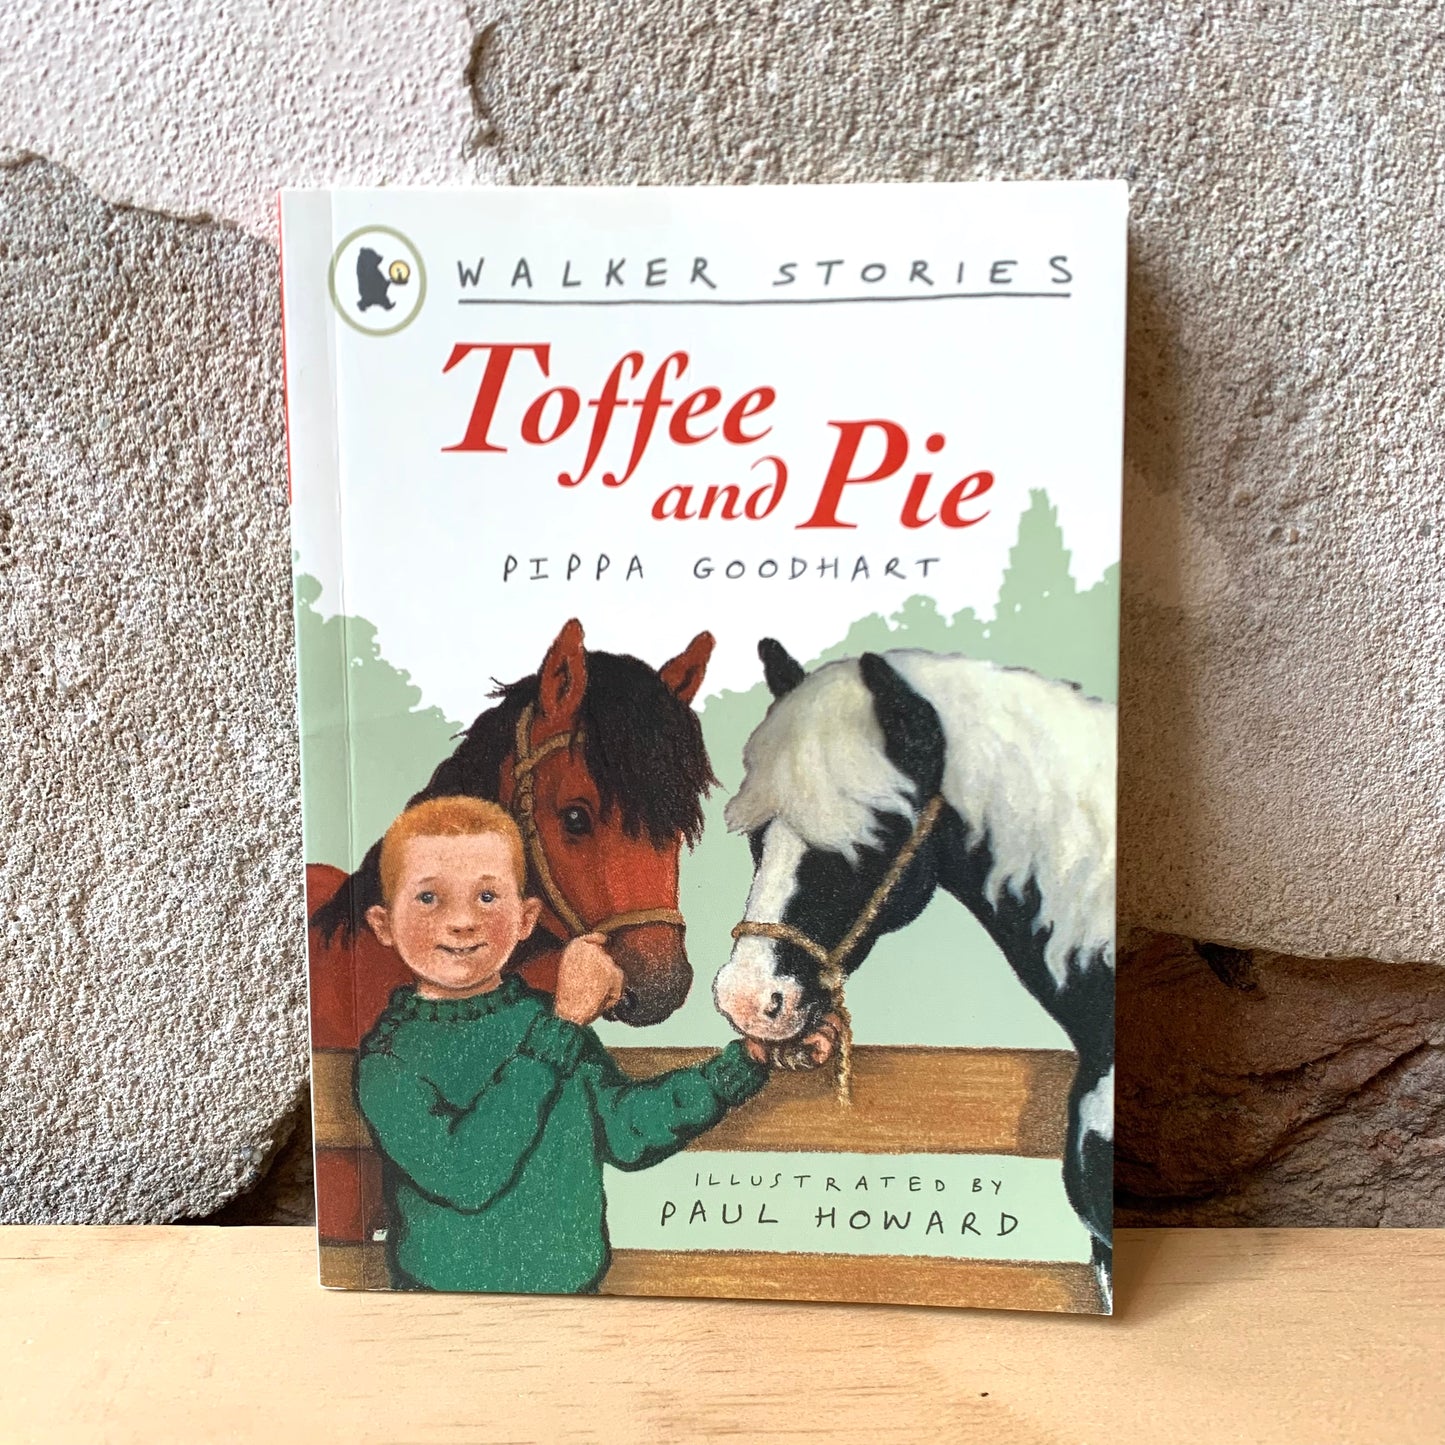 Walker Stories: Toffee and Pie - Pippa Goodhart, Paul Howard